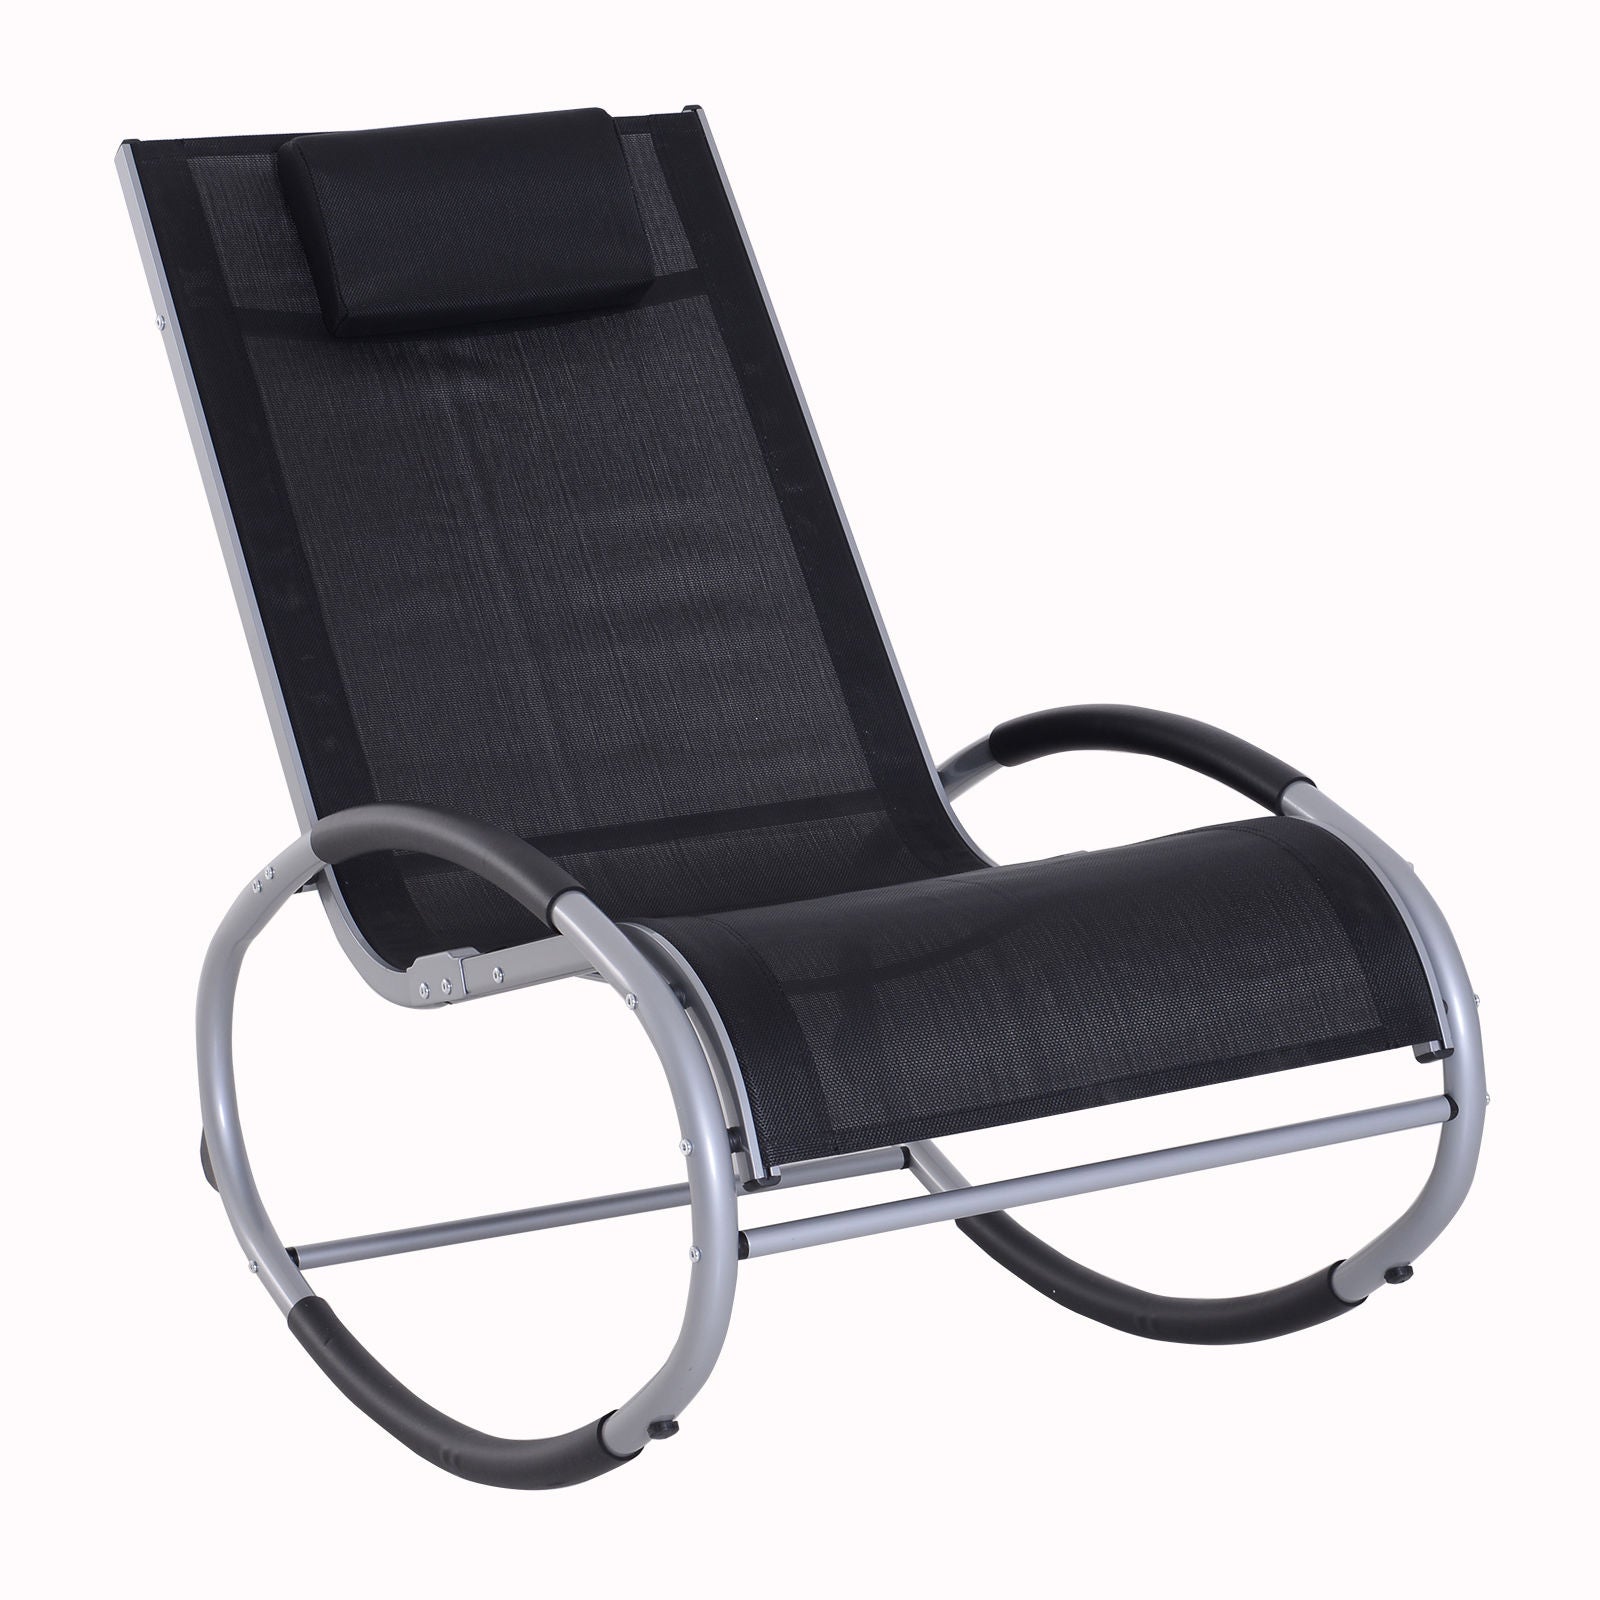 Nancy's Argenteuil Rocking Chair with Cushion - Black - Aluminum, Textilene - 47.24 cm x 24.01 cm x 34.64 cm